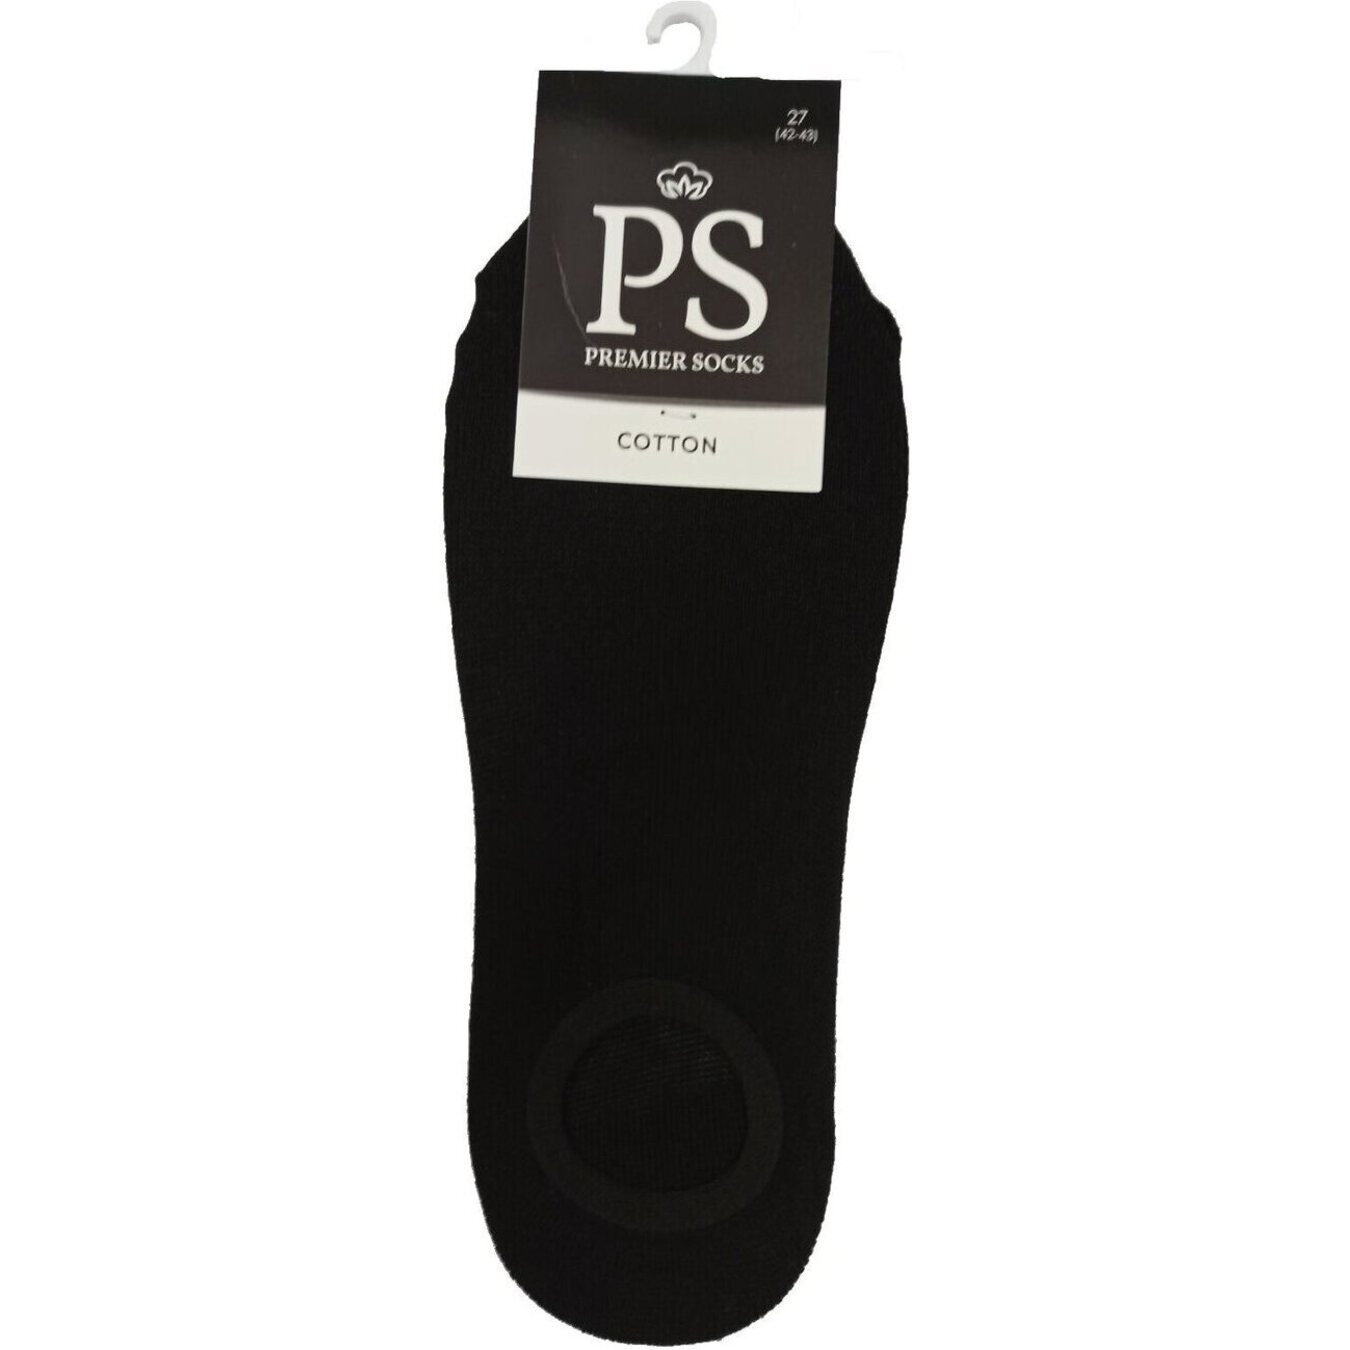 Premier Socks men's ring followers size 27 black